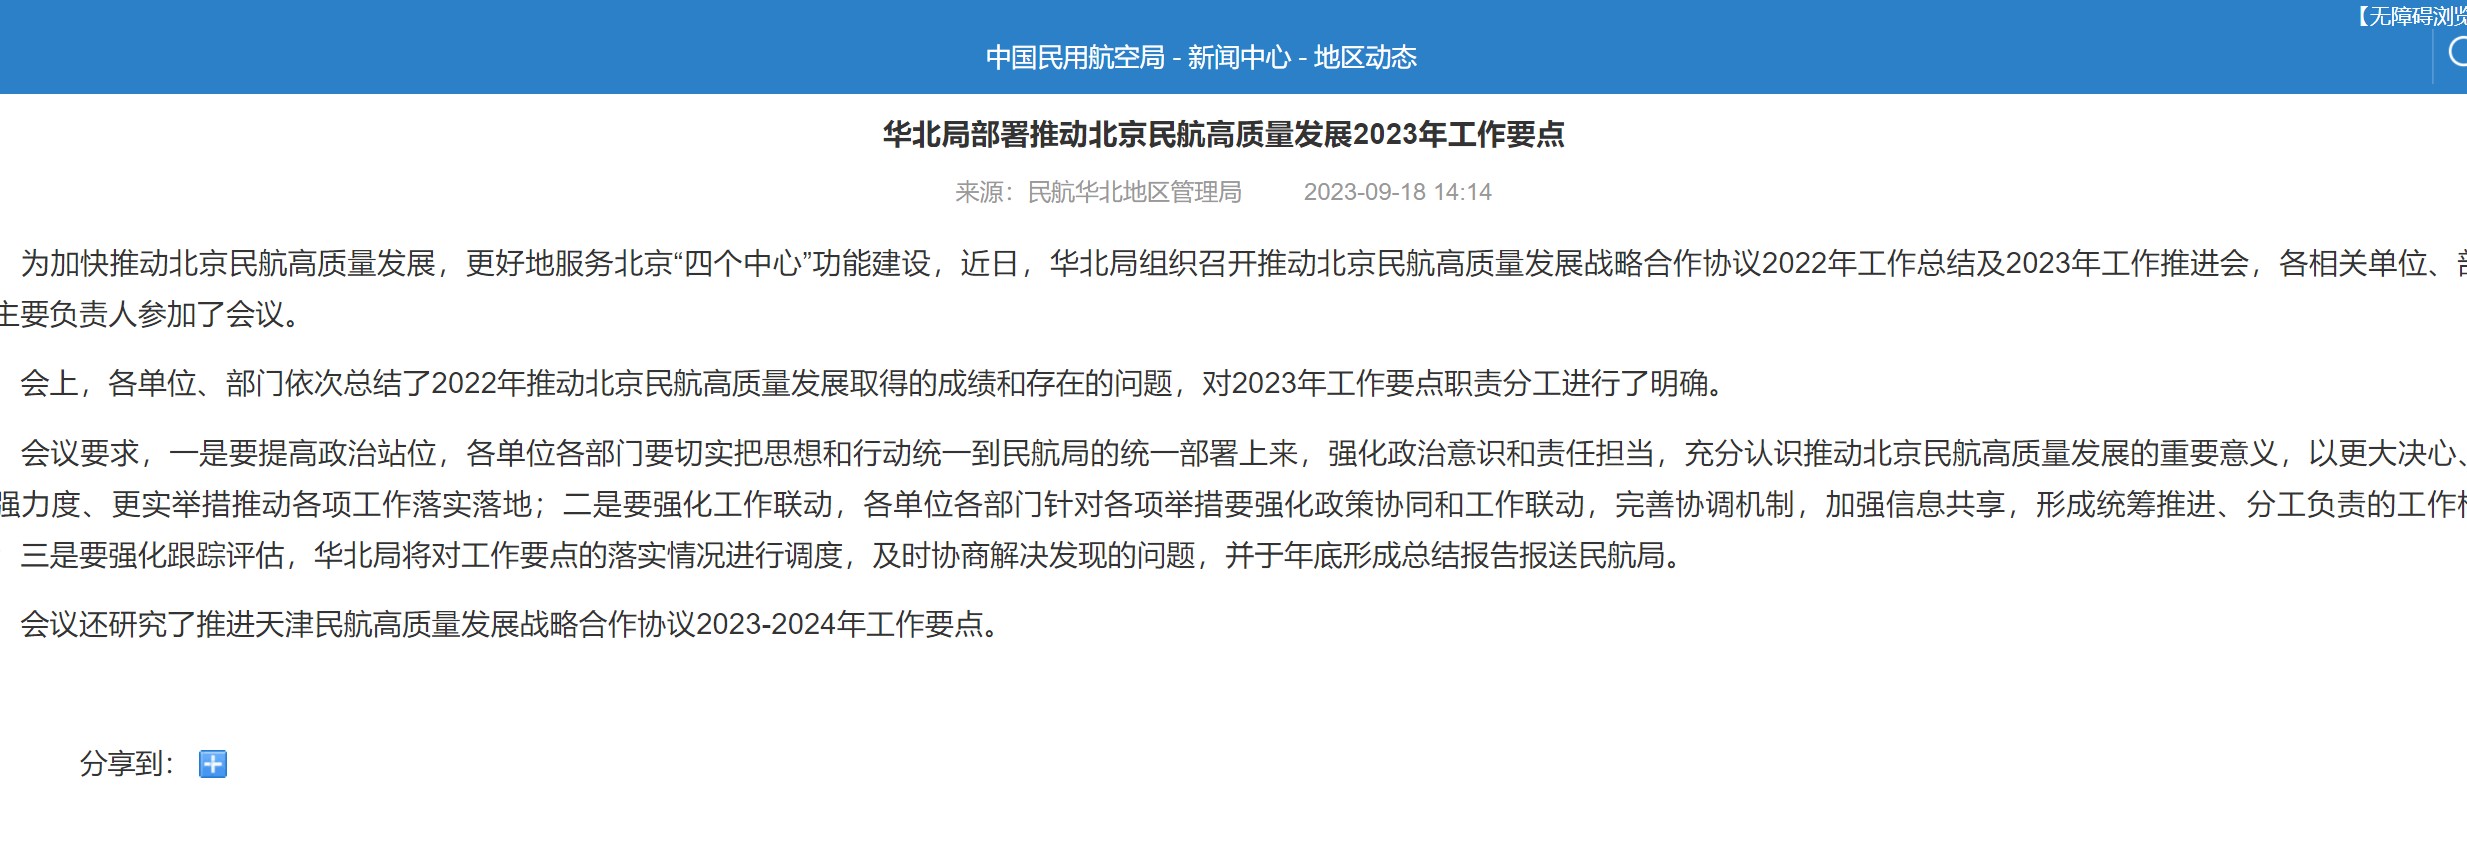 华北局部署推动北京民航高质量发展2023年工作要点